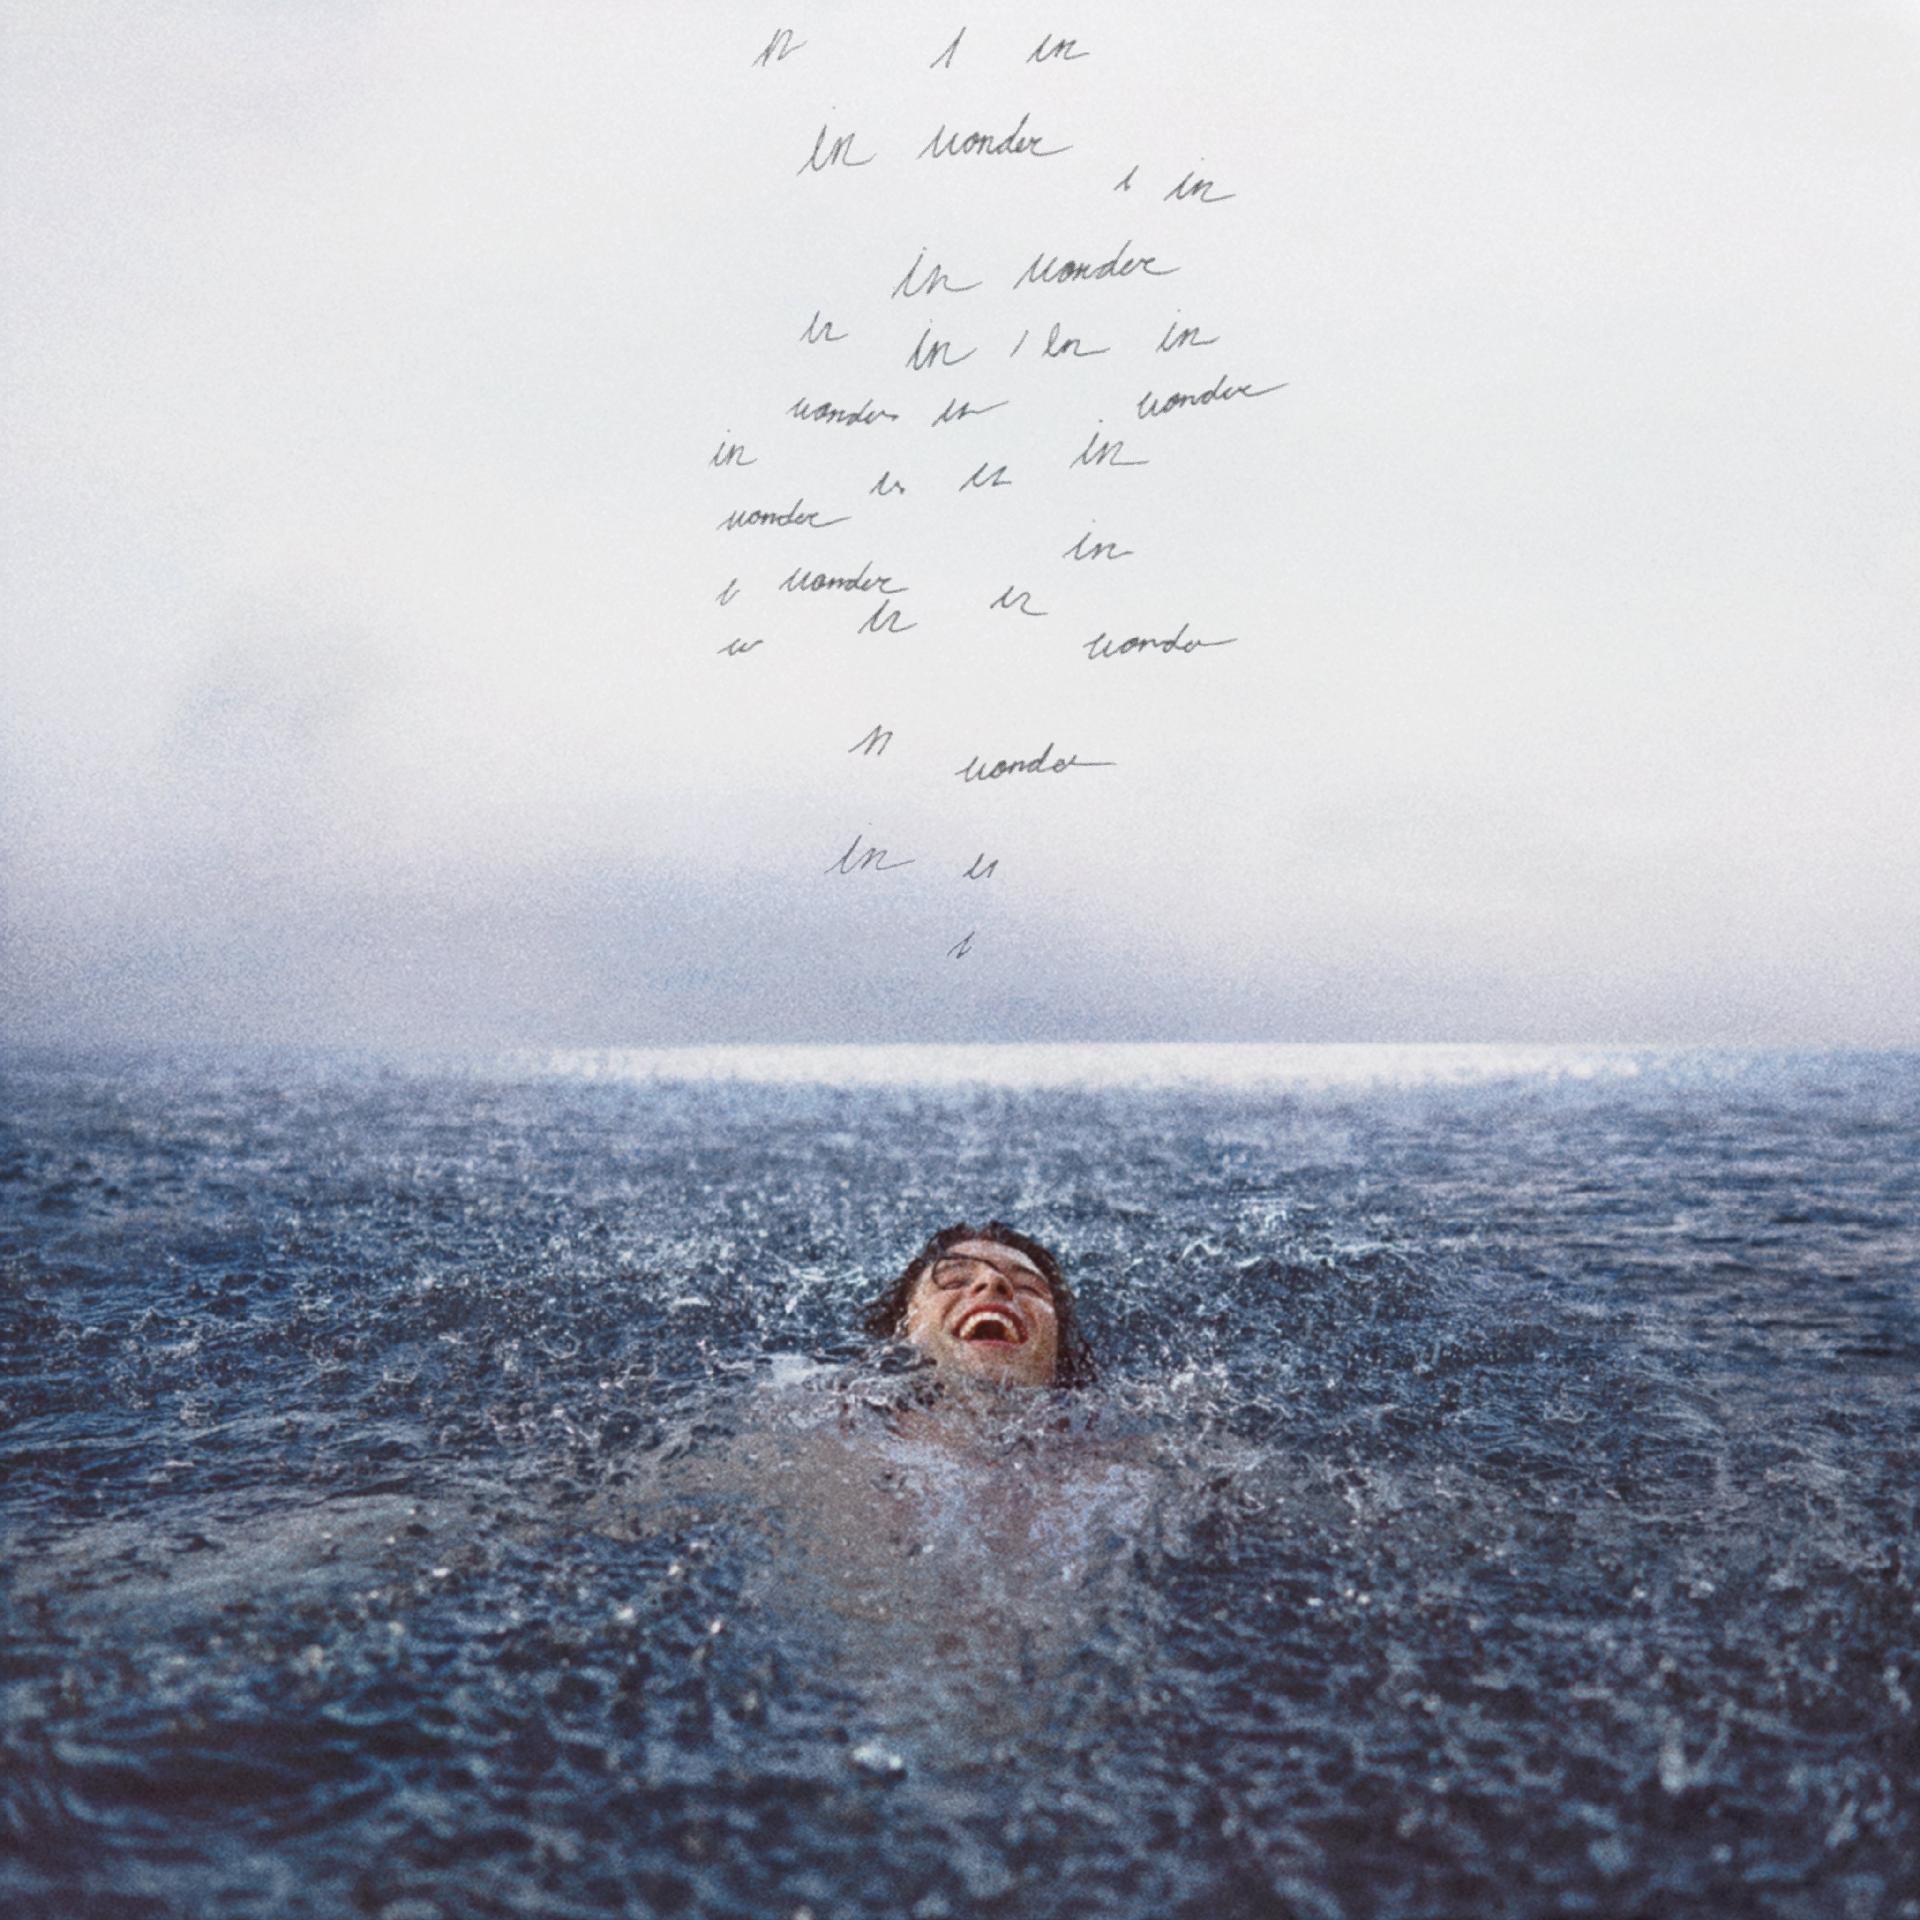 Capa do disco Wonder. Shawn Mendes está nadando e sorrindo, acima dele vemos escritos ilegíveis